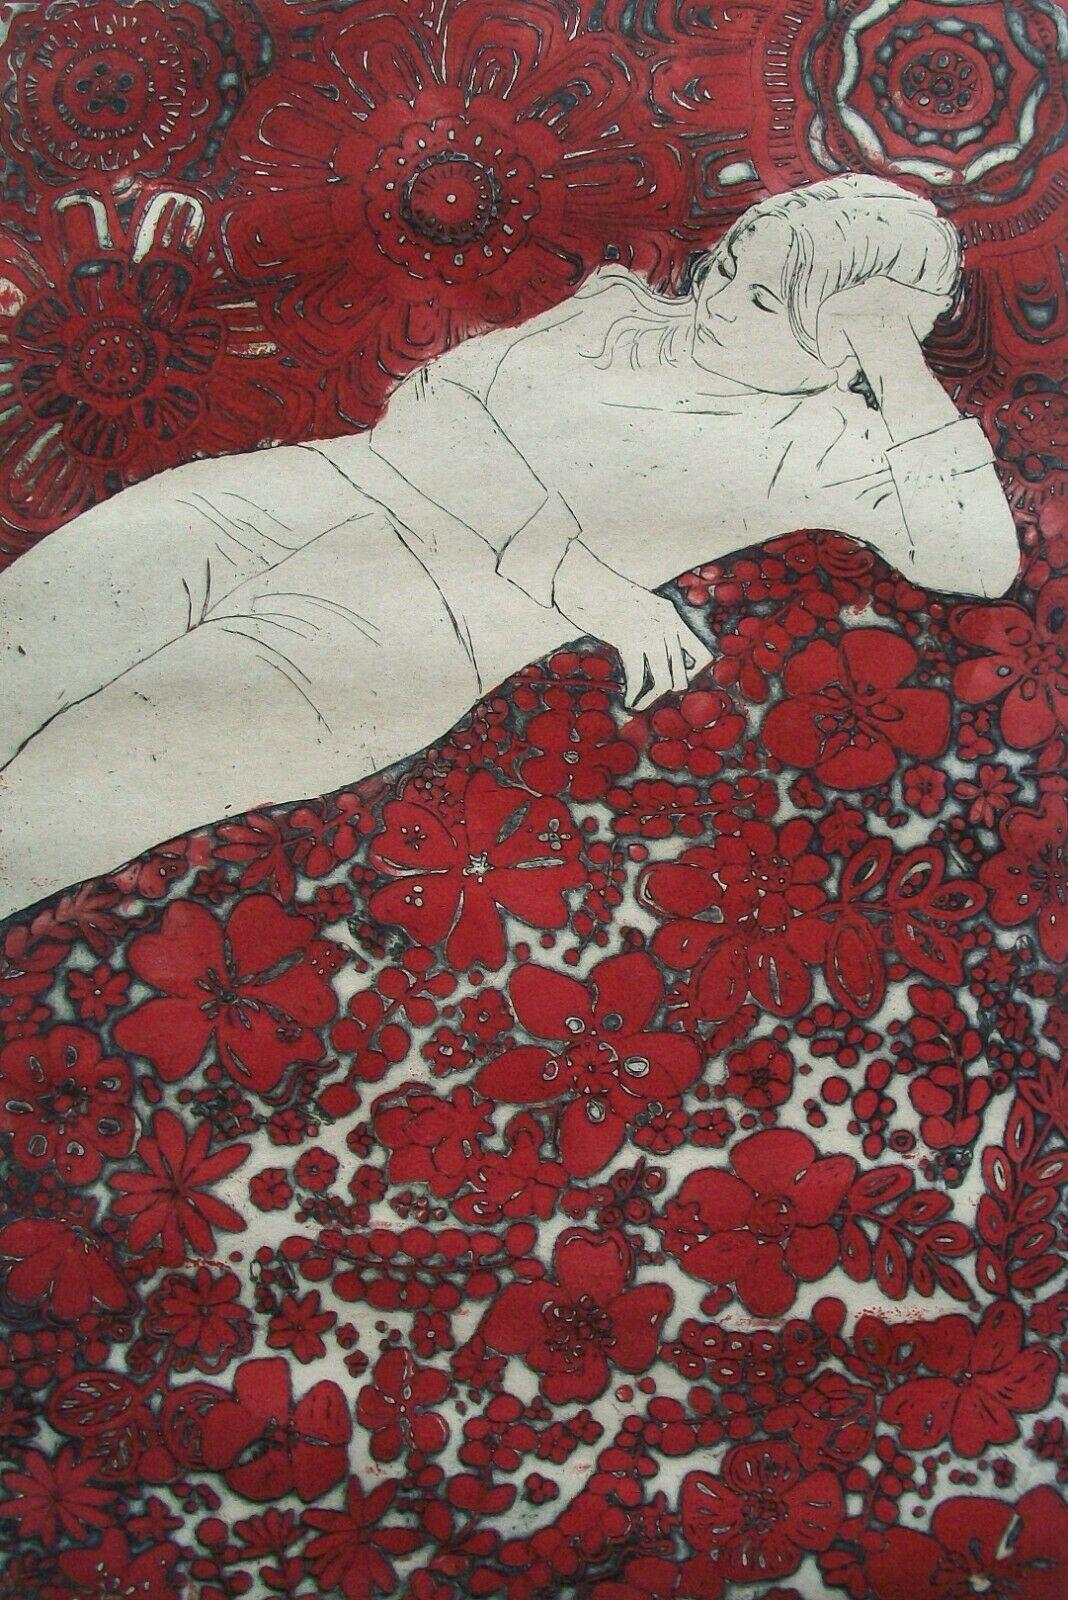 Rita Briansky (Geboren 1925) - 'Dreamscape' - 37/50 - Außergewöhnliche Radierung aus der Mitte des Jahrhunderts auf 'BFK Rives - France'-Papier - wahrscheinlich ihr schönstes Blatt - zeigt eine junge Frau, die auf einem roten Blumenteppich liegt -